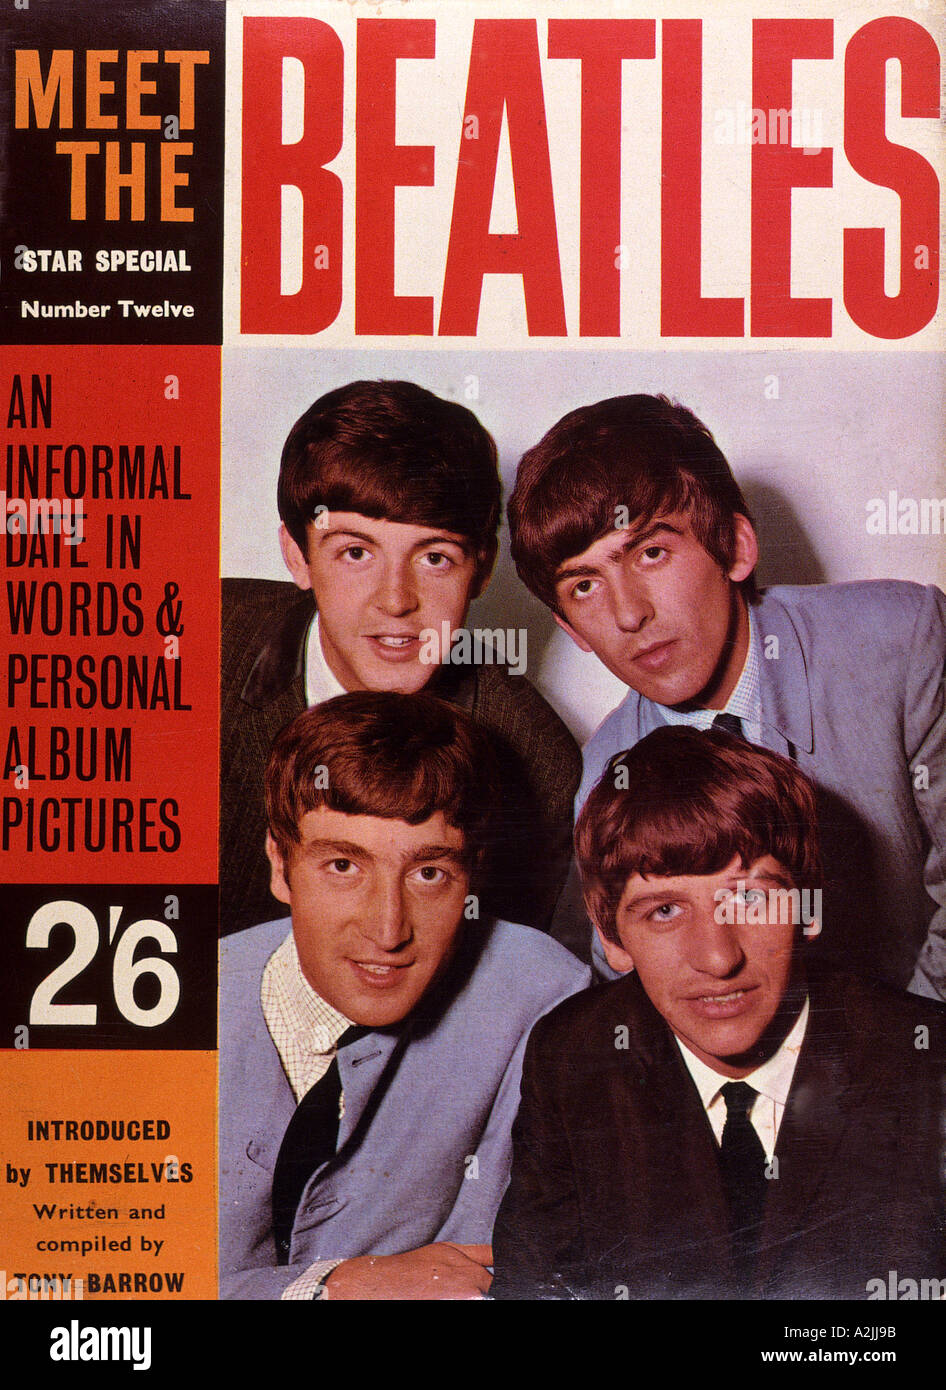 BEATLES fan magazine published 1963 Stock Photo